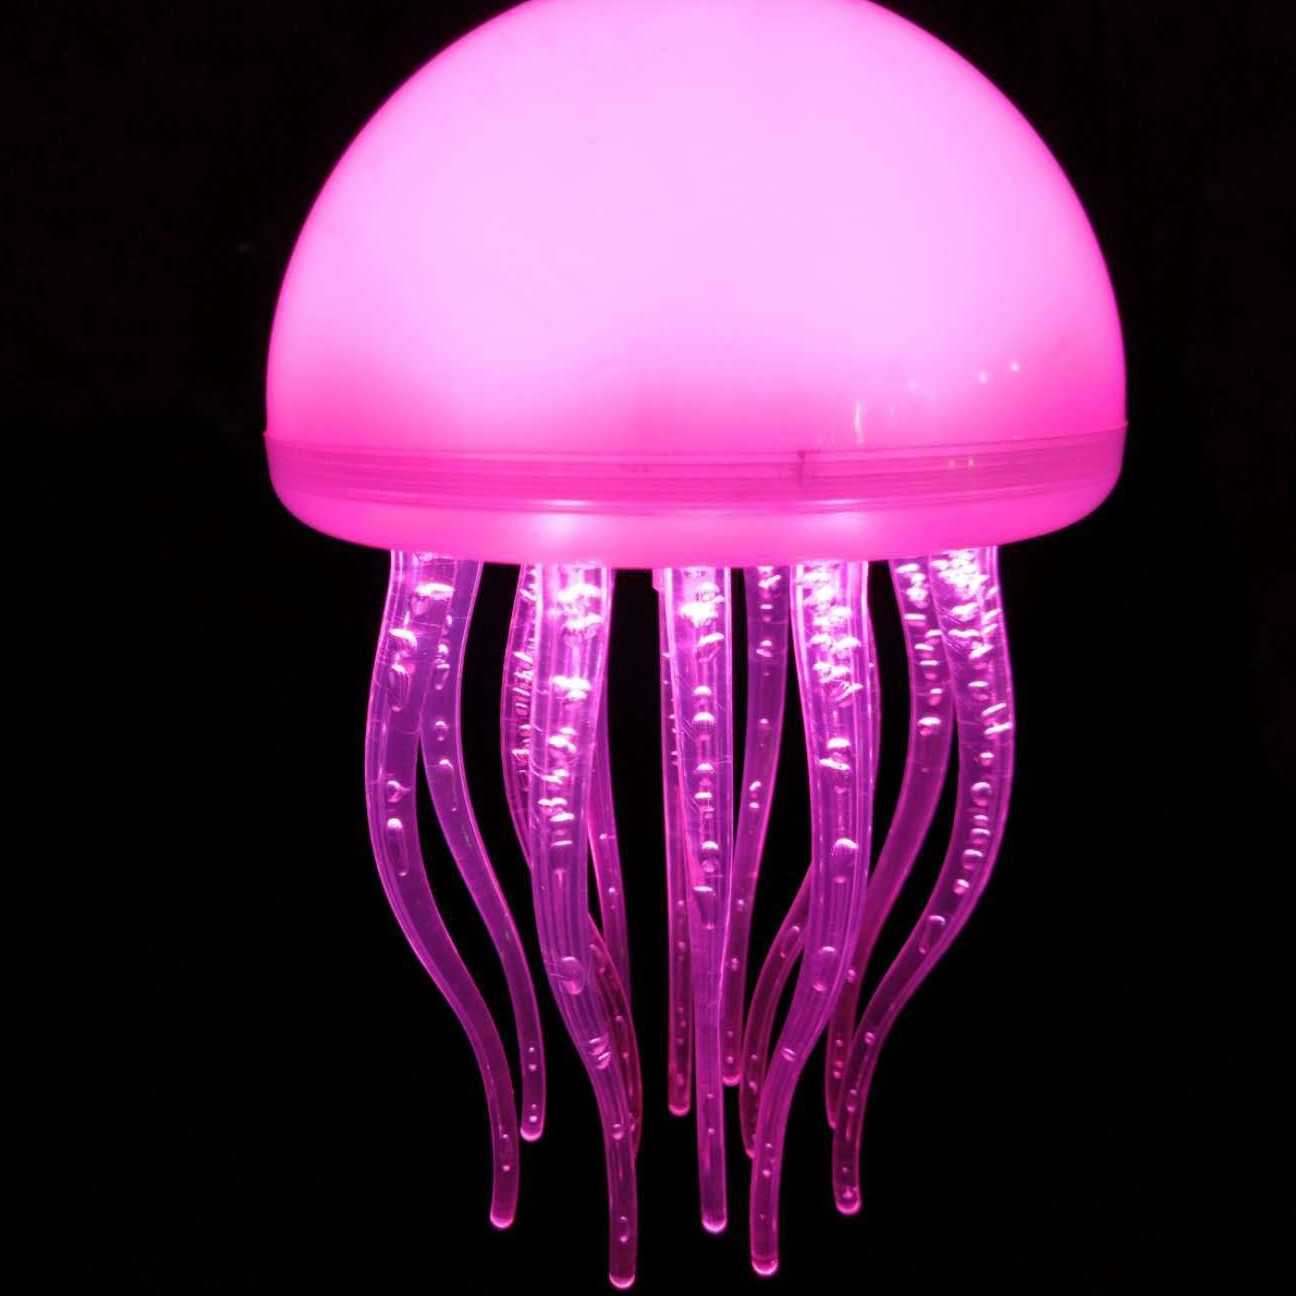 Tanio Kreatywna lada barowa z kolorowymi meduzami Nodic i wiszącym… sklep